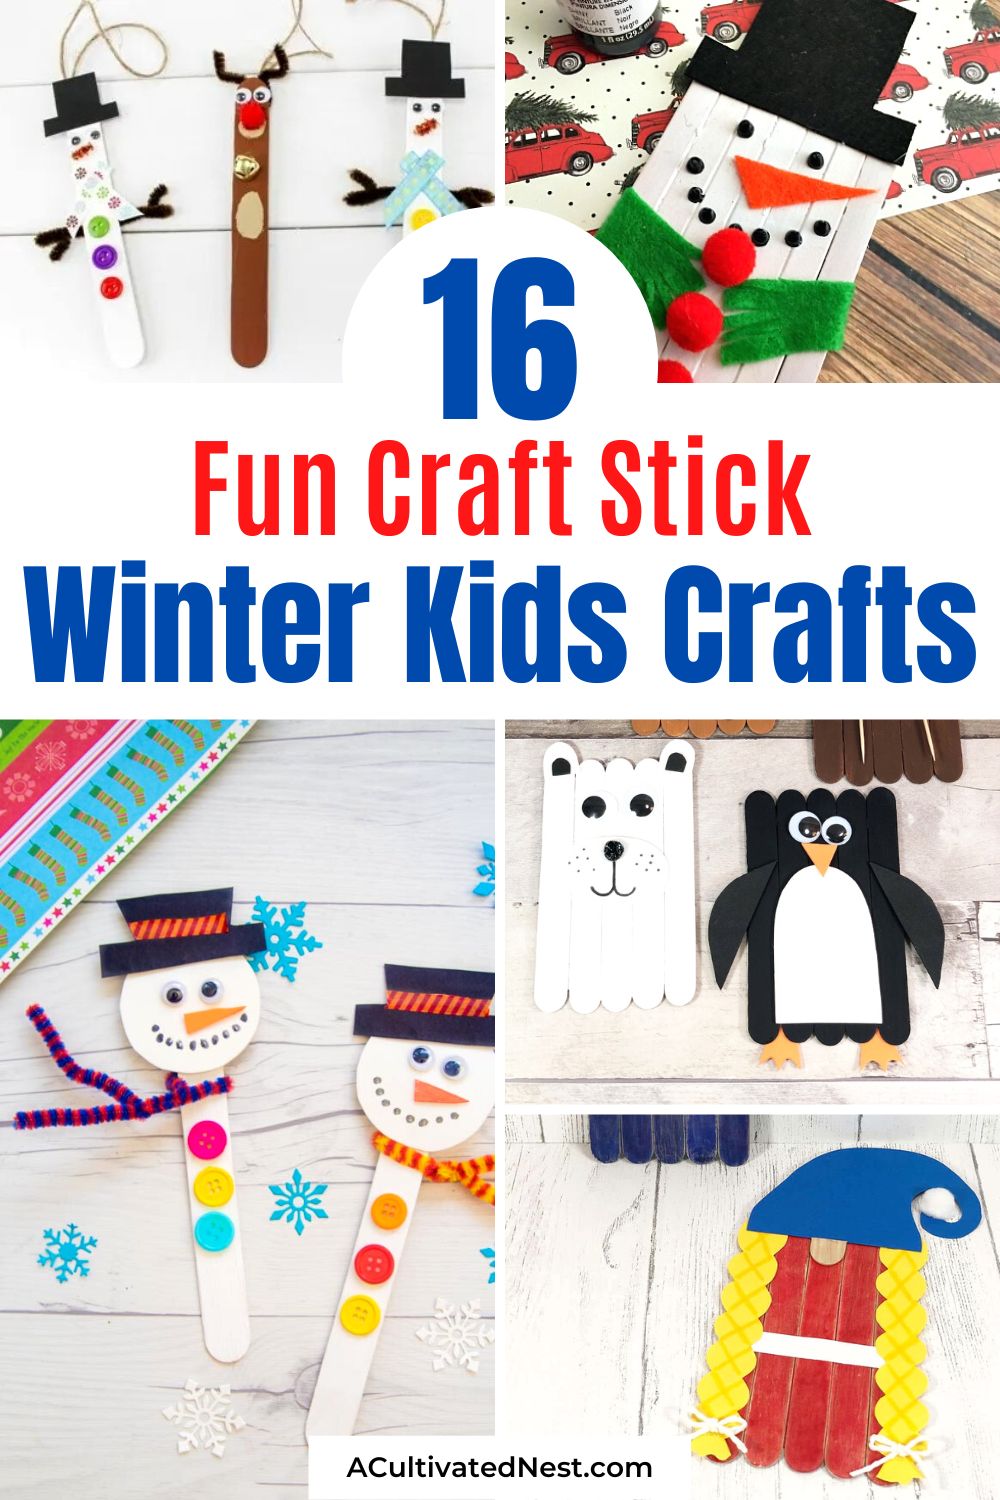 16 artisanat d'hiver amusant pour enfants - Vous pouvez occuper vos enfants avec une activité créative cet hiver avec ces bricolages d'hiver frugaux et amusants pour enfants !  Il y a tellement de choses amusantes qui peuvent être faites avec des bâtons de popsicle !  |  bâton de popsicle artisanat pour enfants, bricolages de bâton de popsicle d'hiver, #kidsCrafts #kidsActivities #crafts #winterKidsCrafts #ACultivatedNest